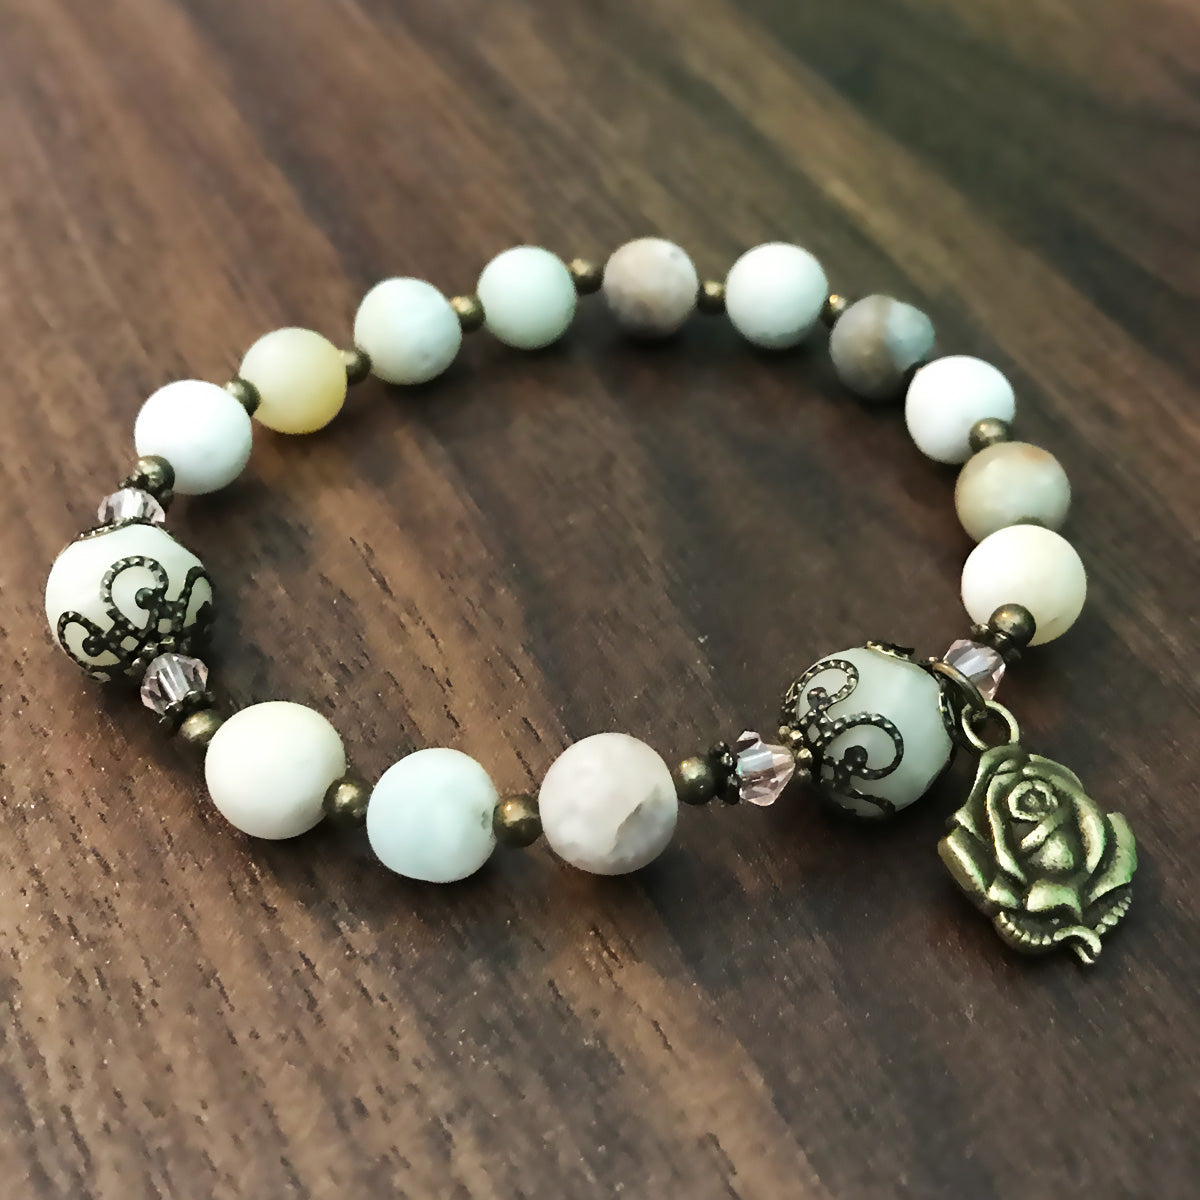 Amazonite Stone Rosary Bracelet by Catholic Heirlooms - Confirmation - Holy Communion Gift